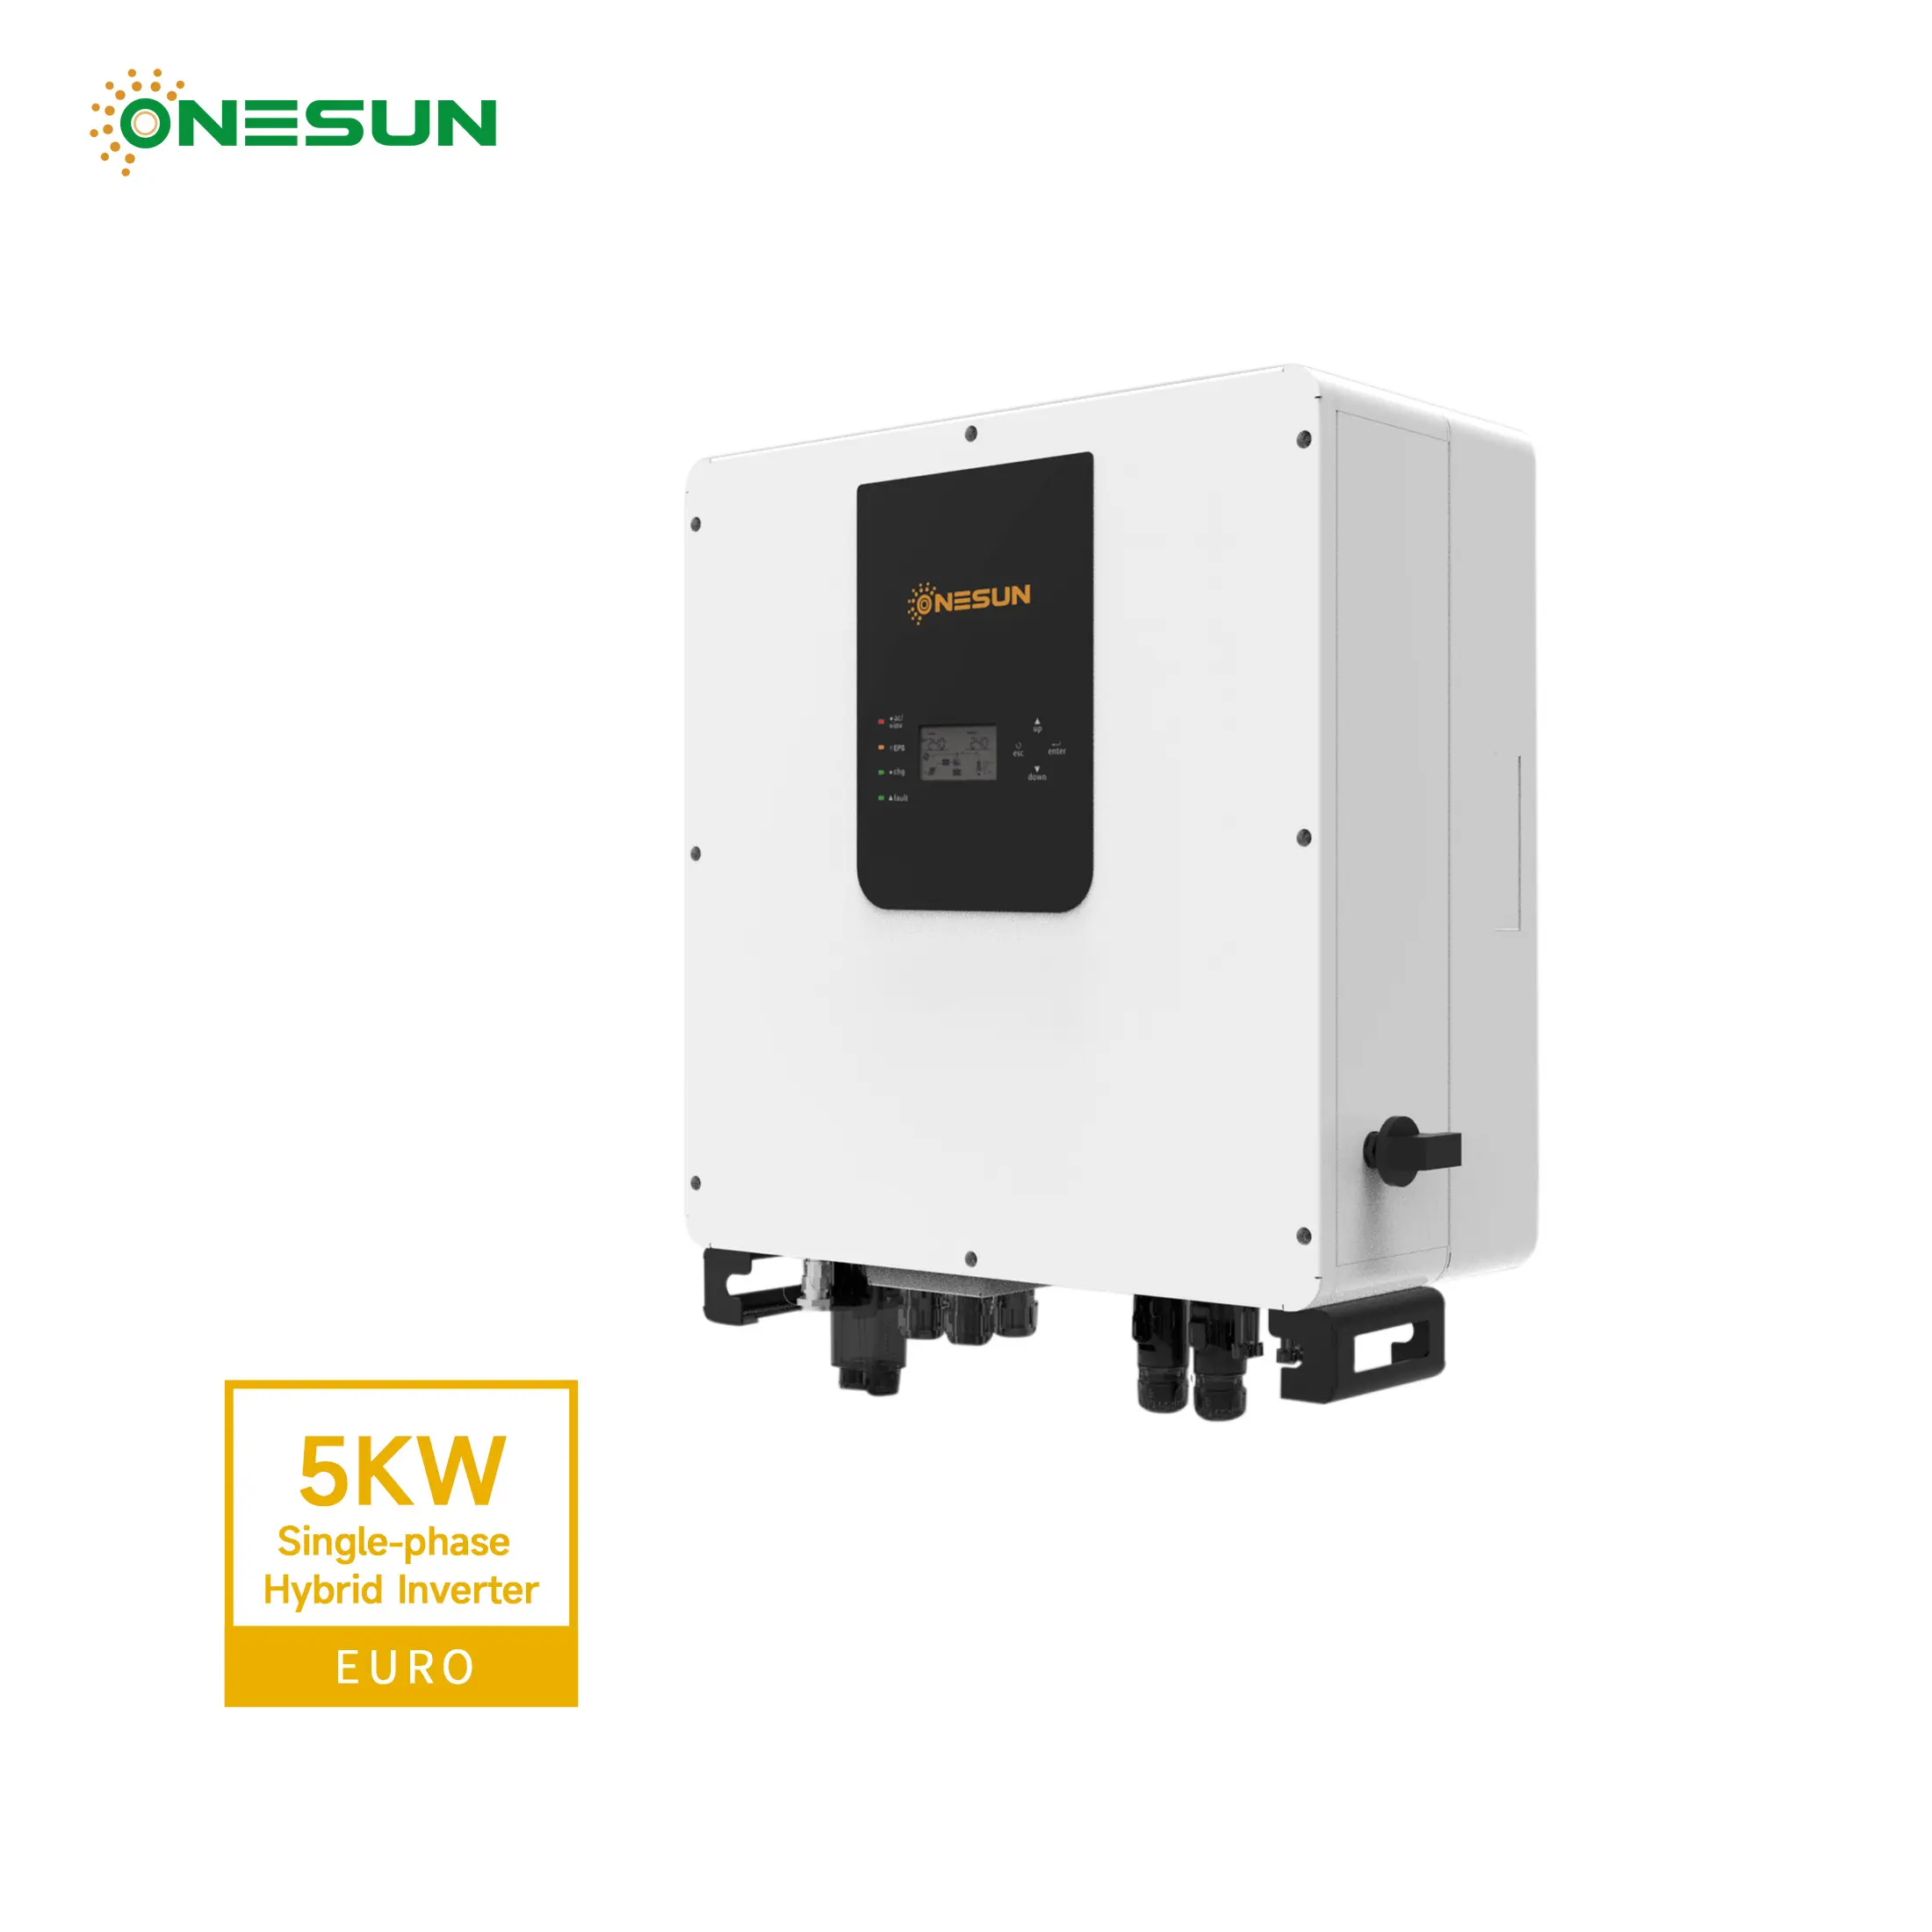 ONESUN Inverter tenaga surya, 5KW fase tunggal On & off-grid untuk sistem kekuatan tenaga surya rumah tangga